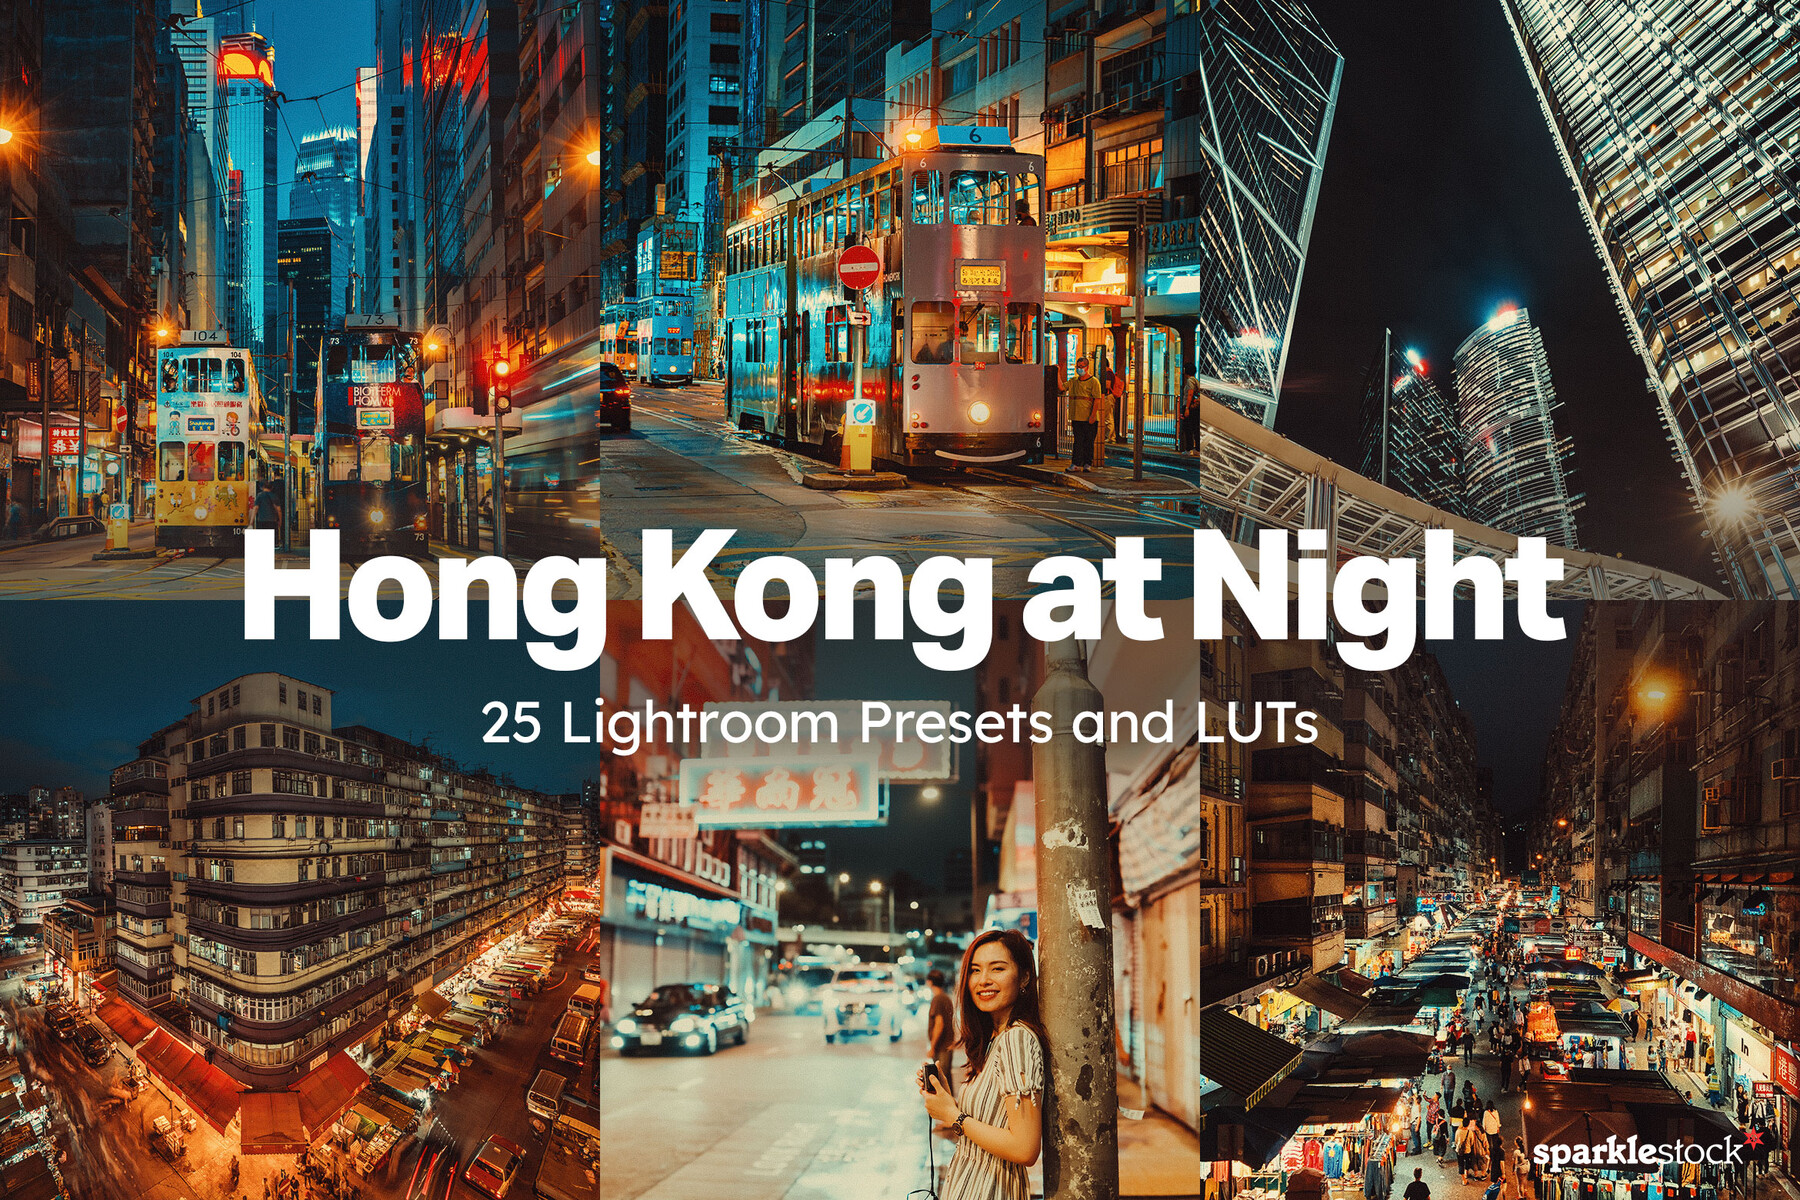 ArtStation - Hong Kong at Night LUTs and Lightroom Presets | Resources